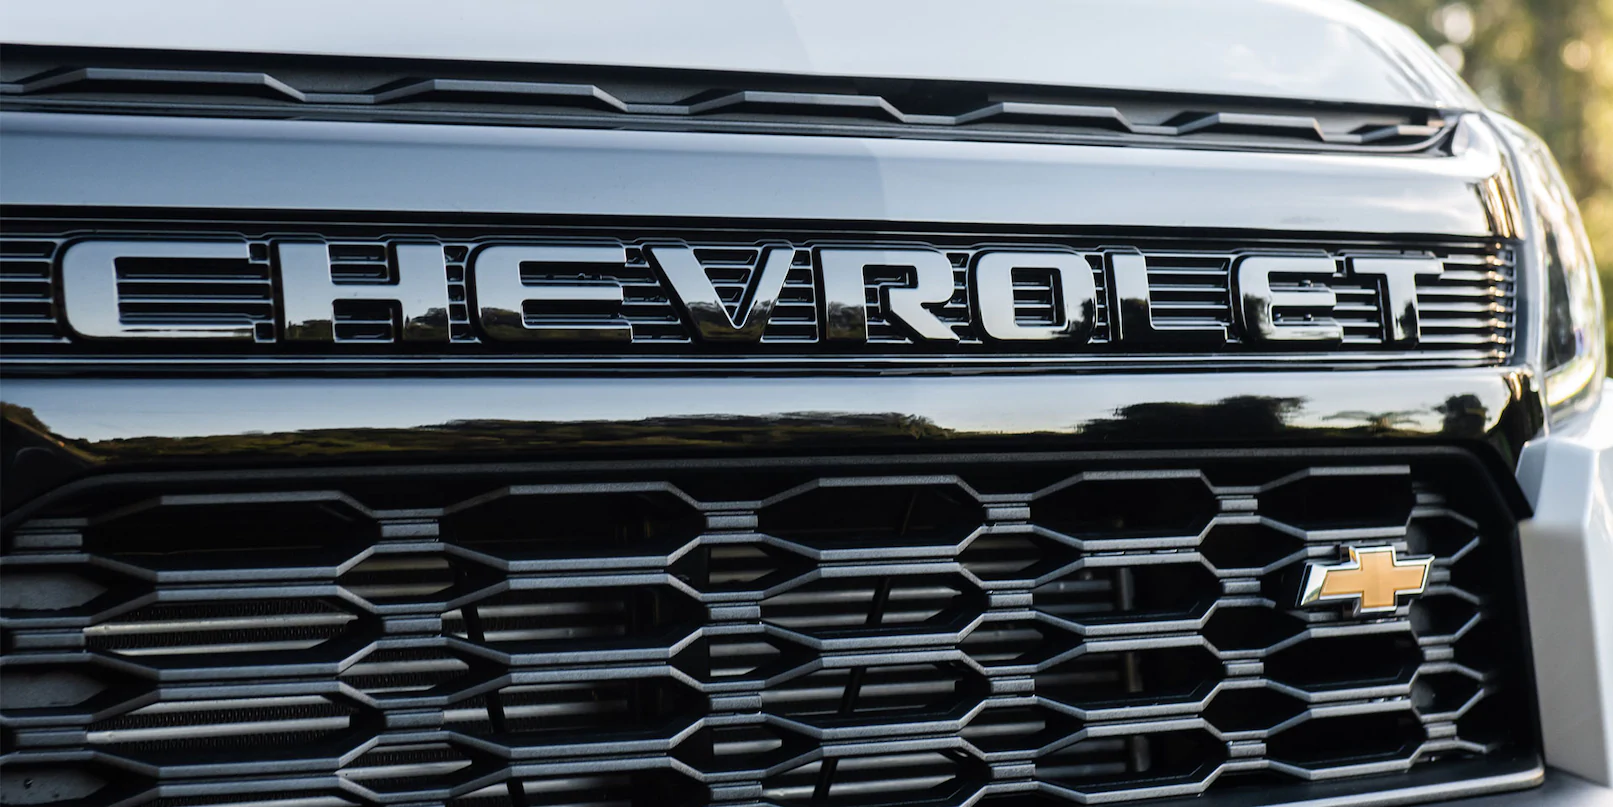 Chevrolet Nueva S10 - Frente de tu Camioneta 4x4